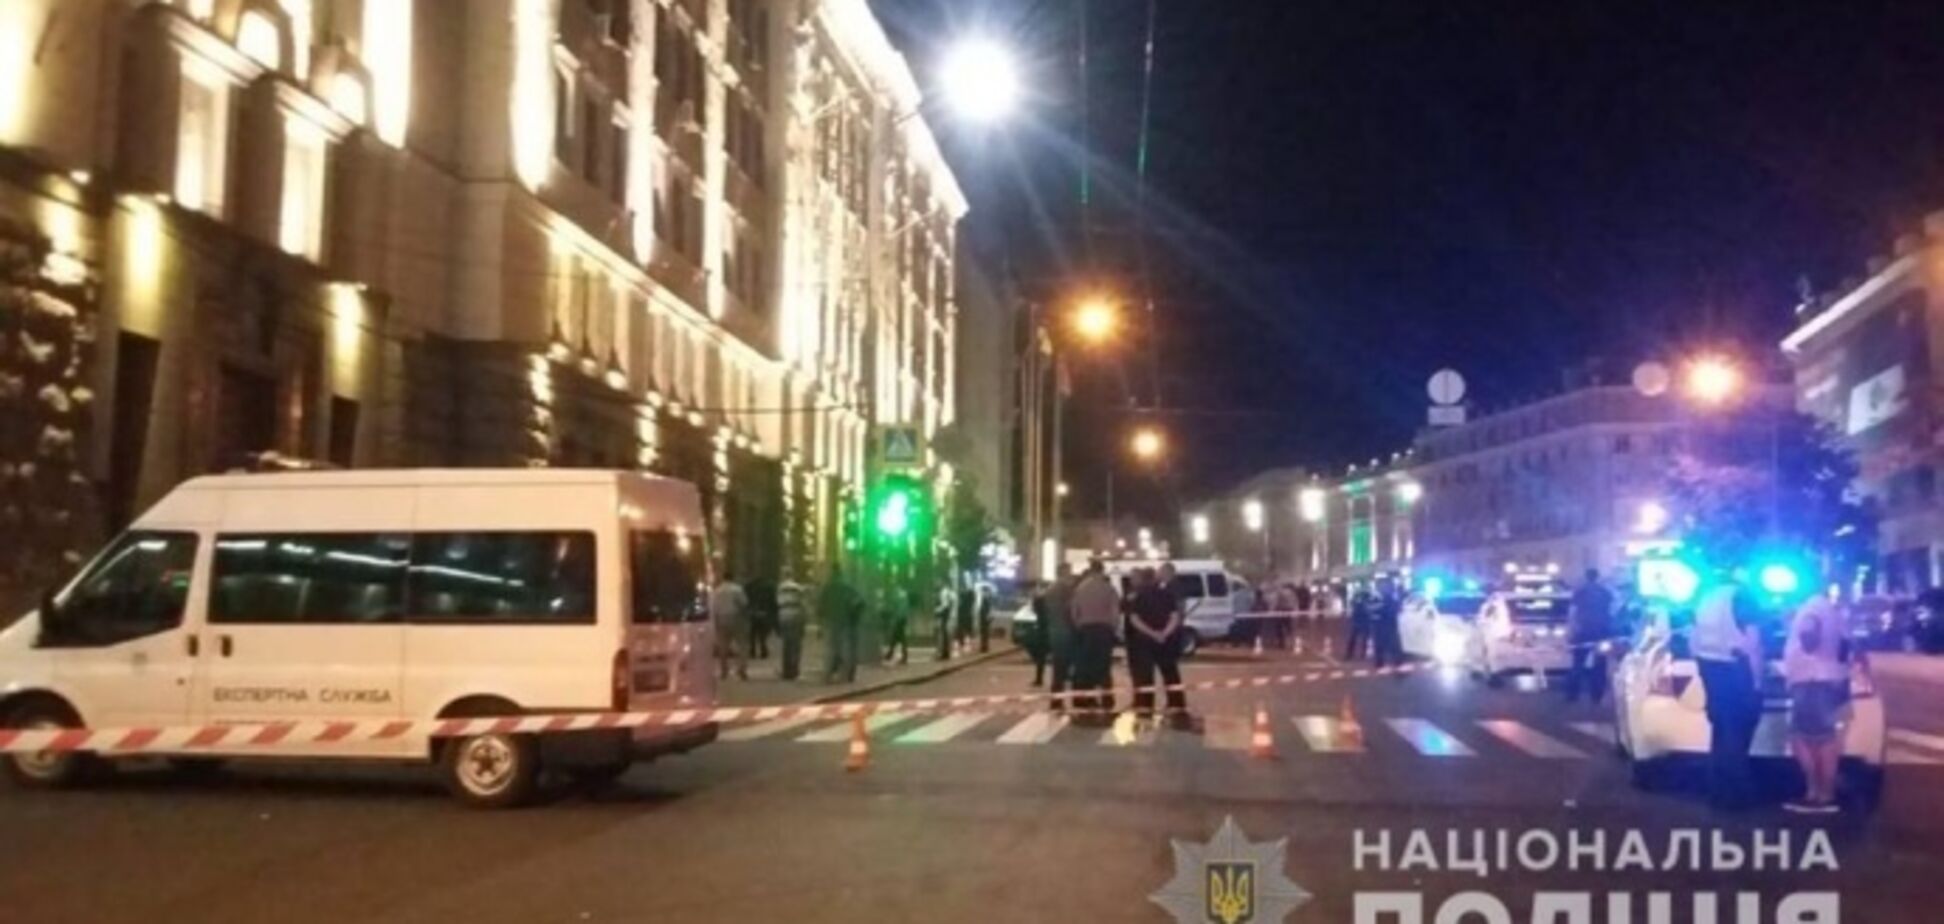  На мэрию Харькова напали: ранен охранник и погиб полицейский. Все подробности 